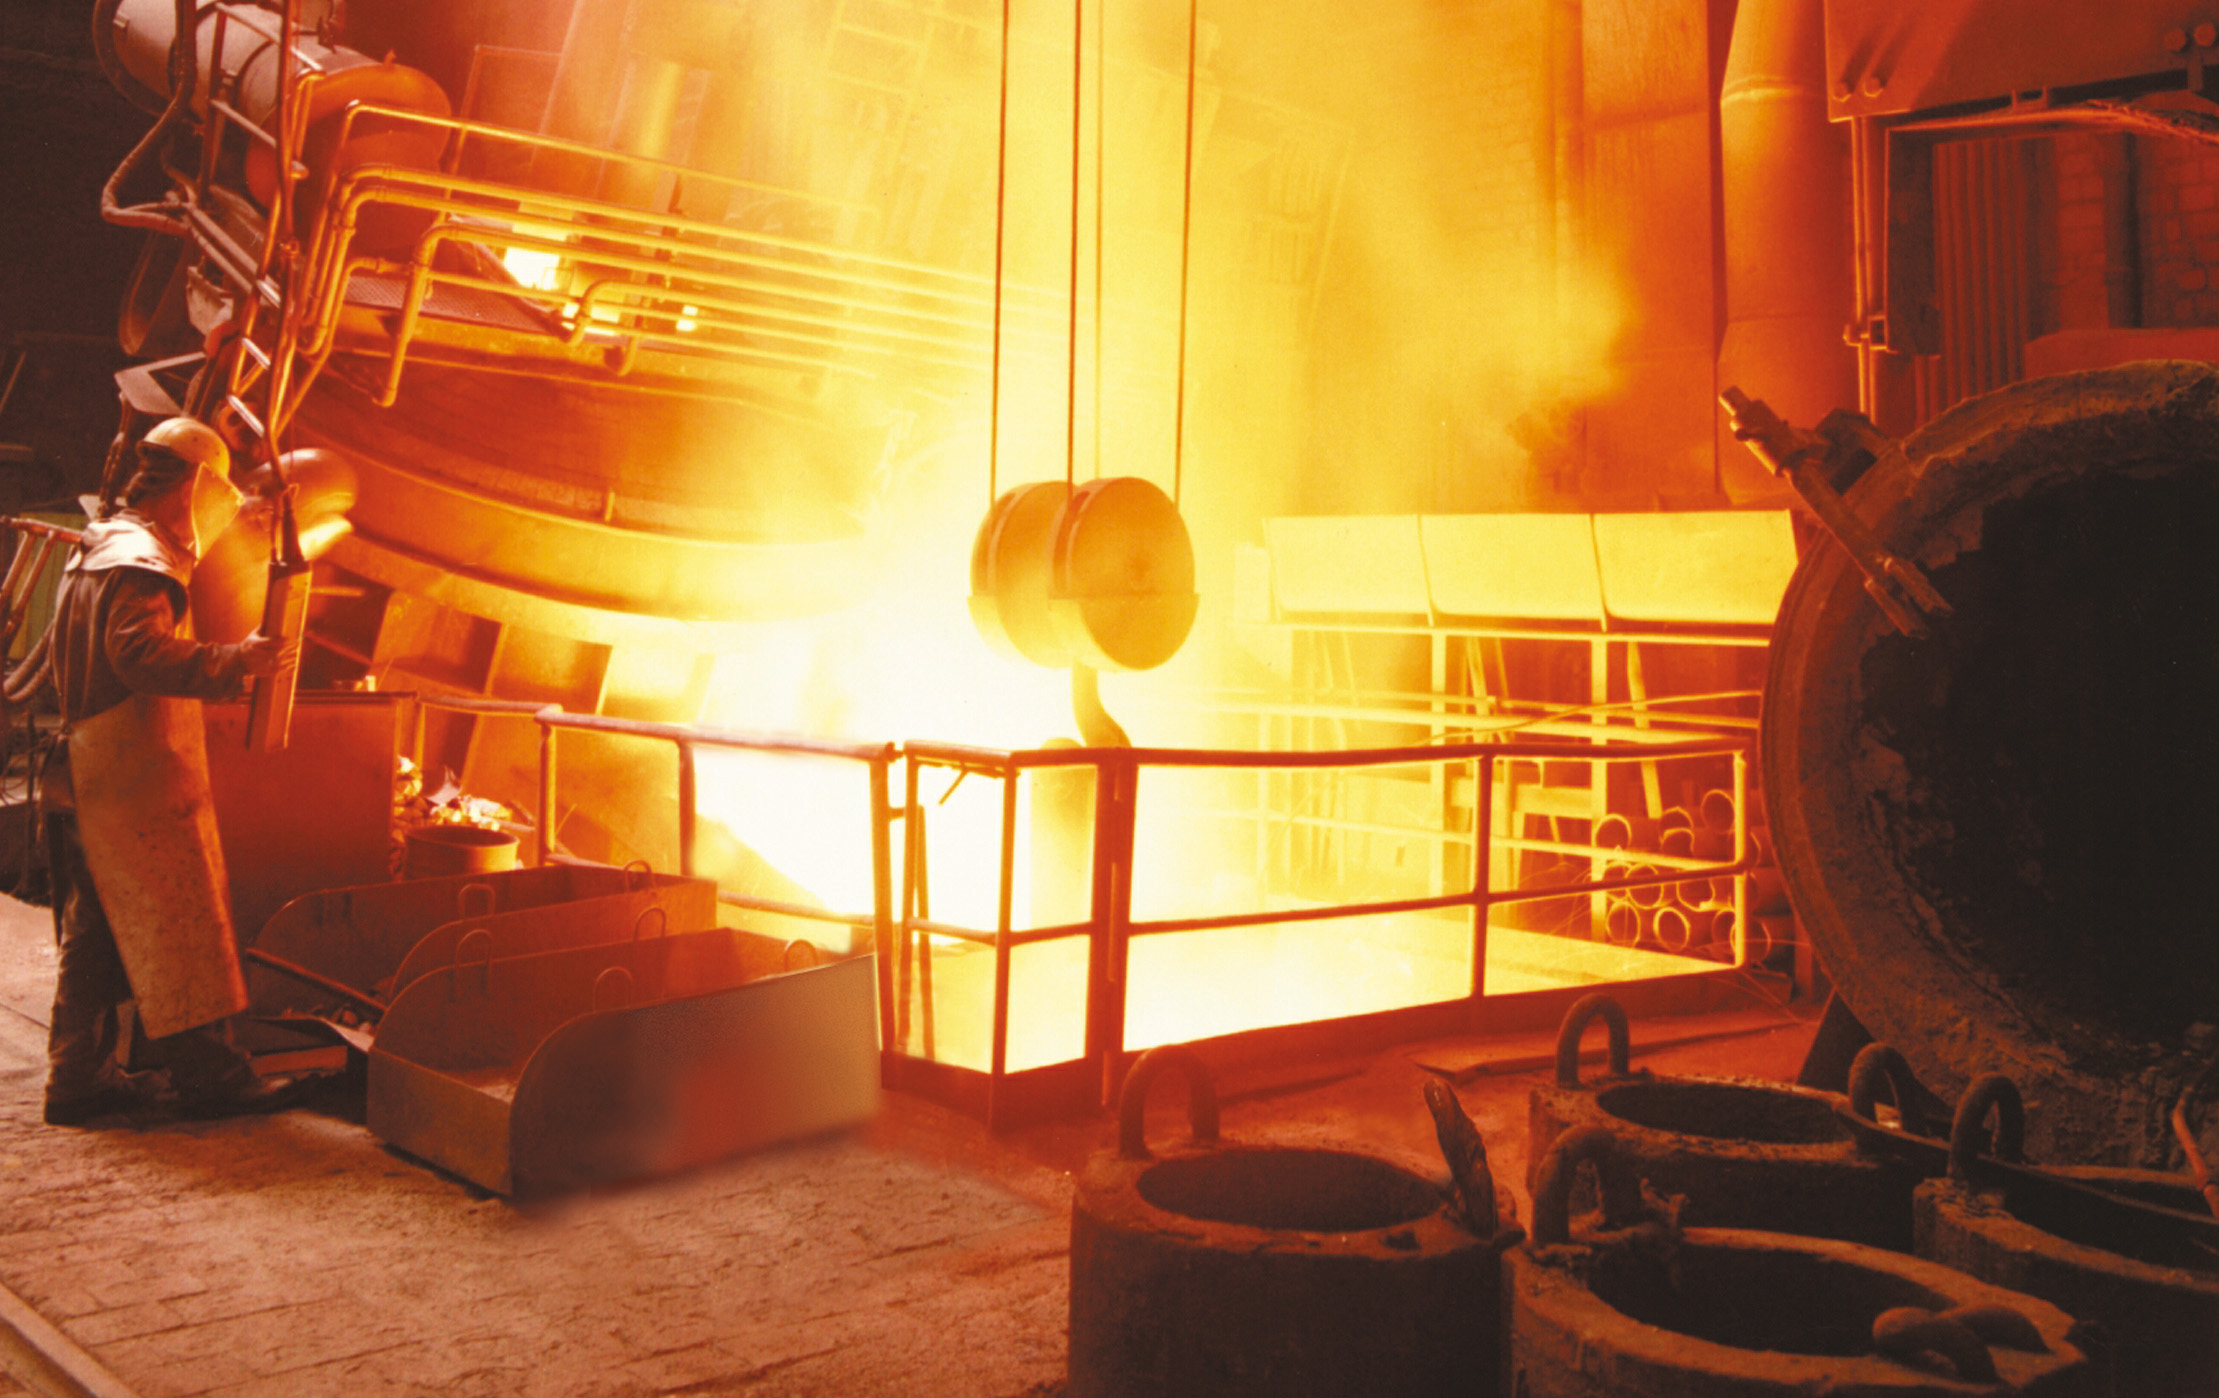 Thép Miền Nam sử dụng vật liệu chịu lửa trong luyện thép lò điện hồ quang